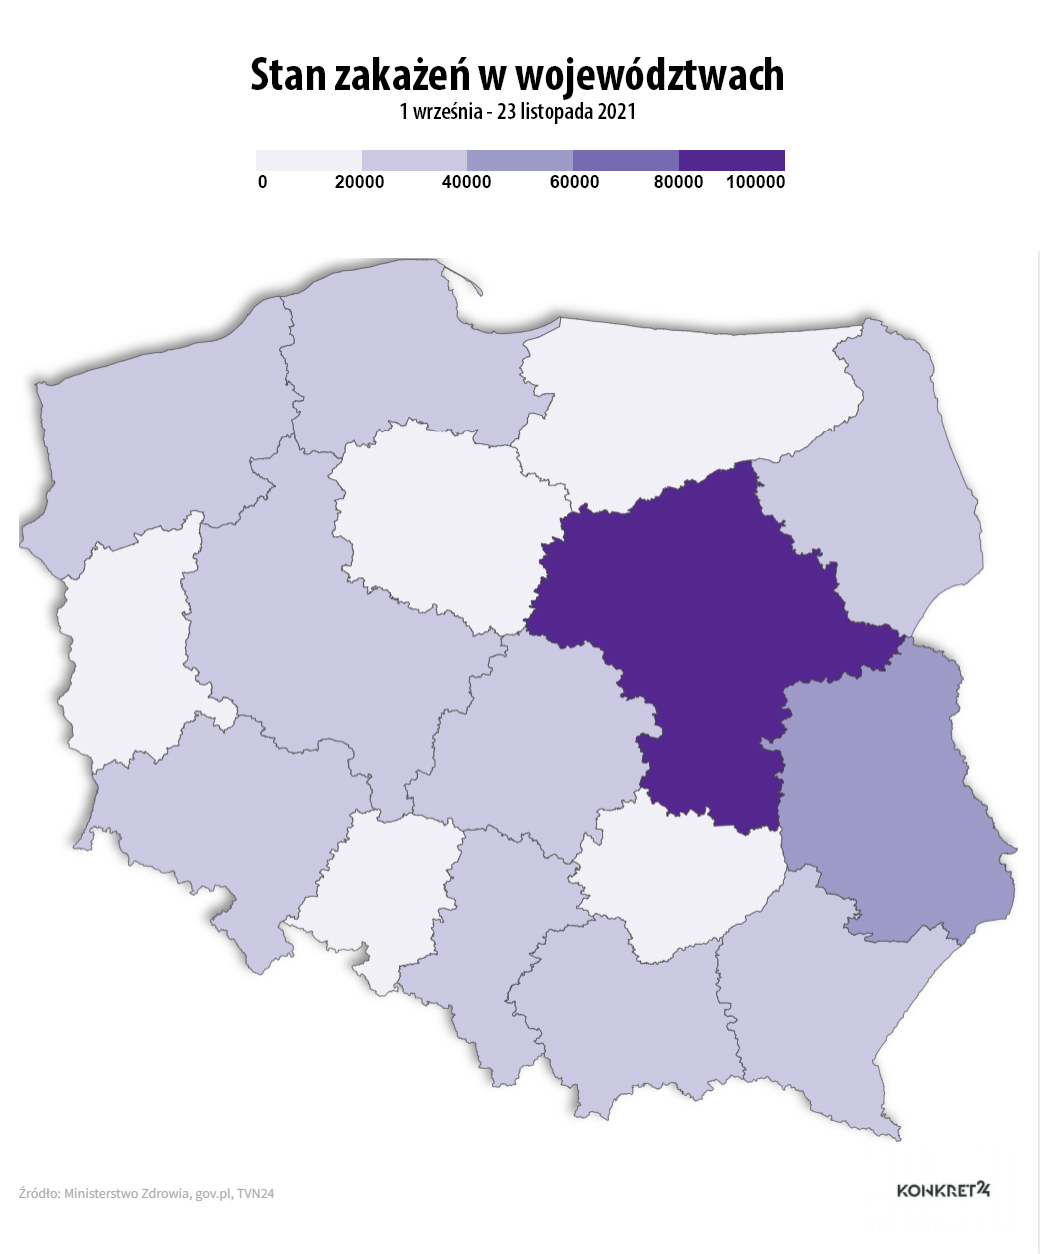 Stan zakażeń w województwach (dane od 1 września do 23 listopada 2021)